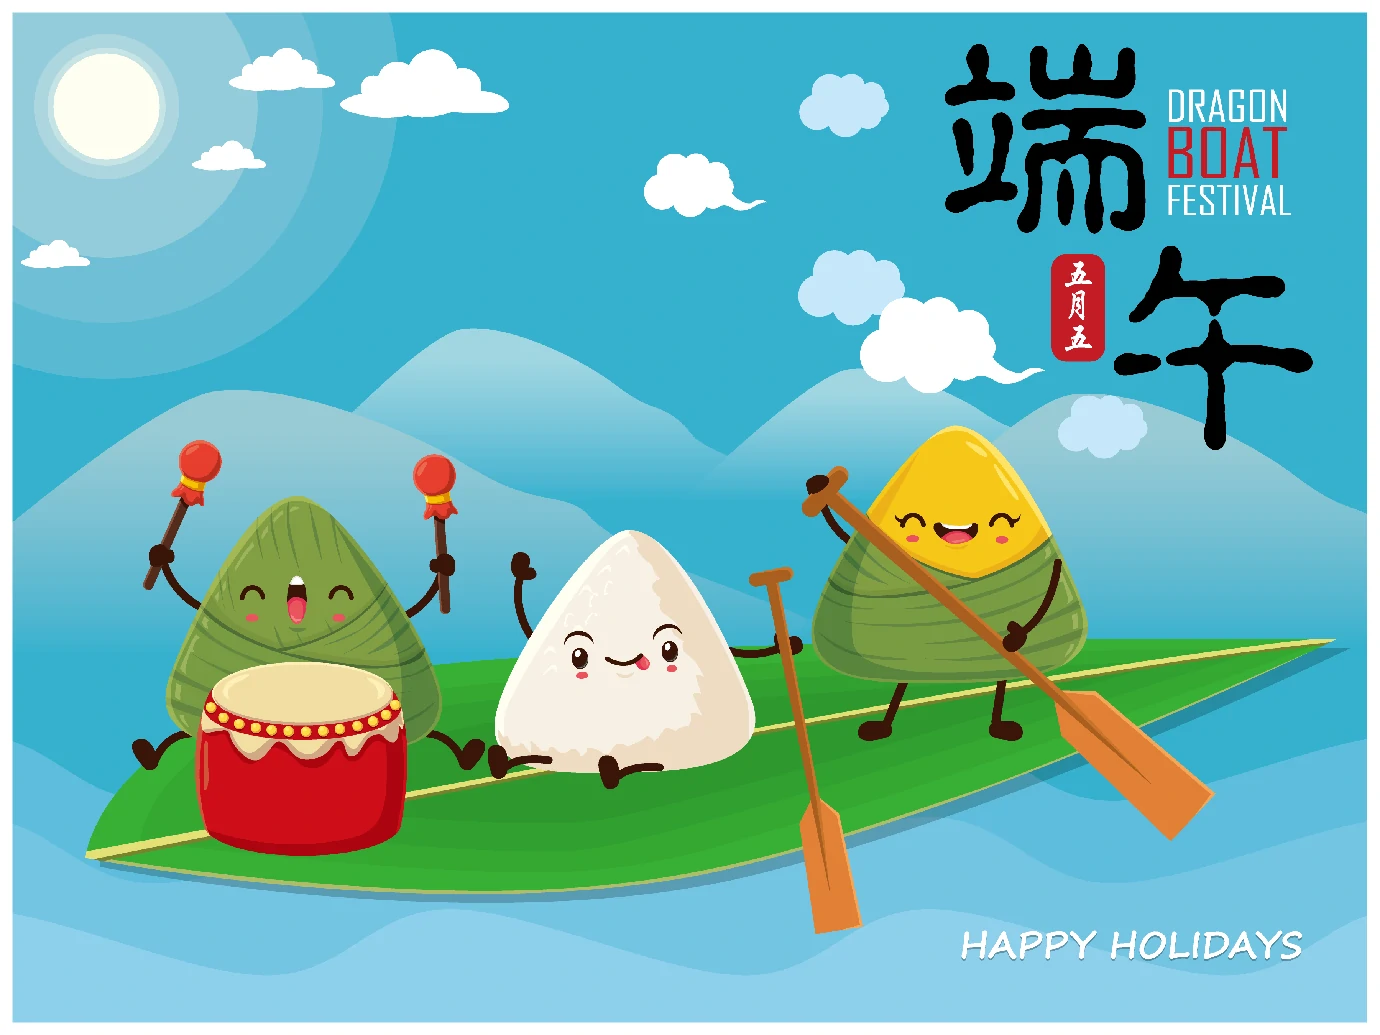 中国传统节日卡通手绘端午节赛龙舟粽子插画海报AI矢量设计素材【016】